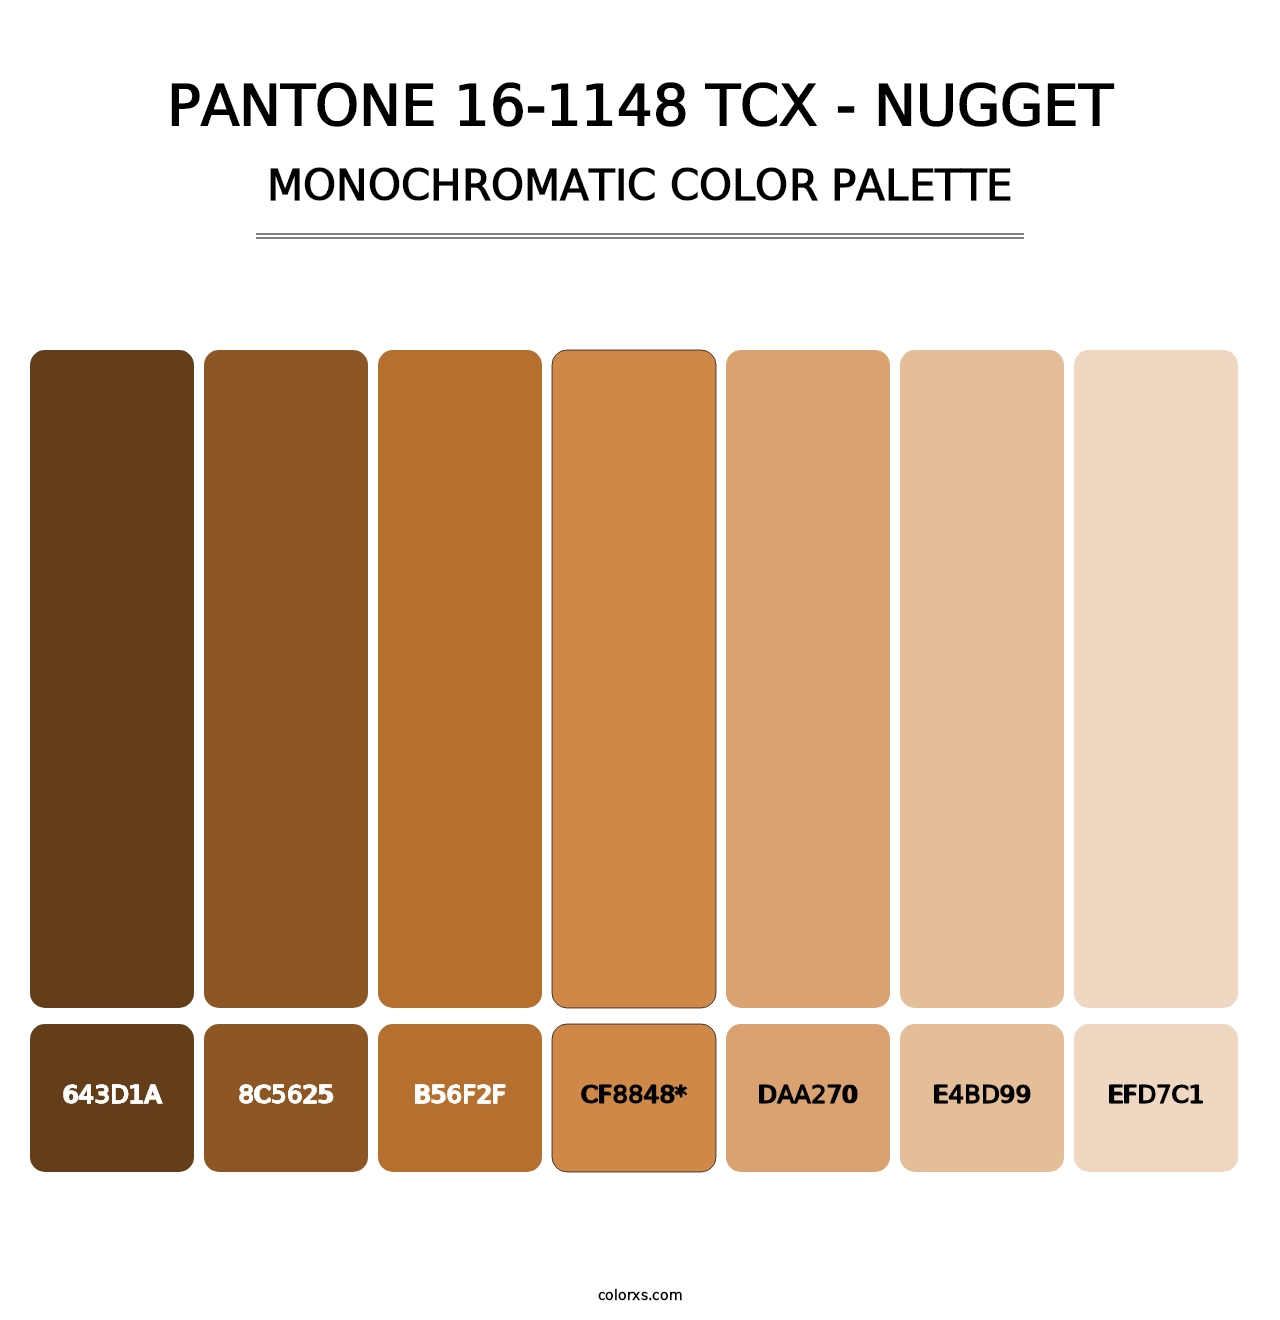 PANTONE 16-1148 TCX - Nugget - Monochromatic Color Palette